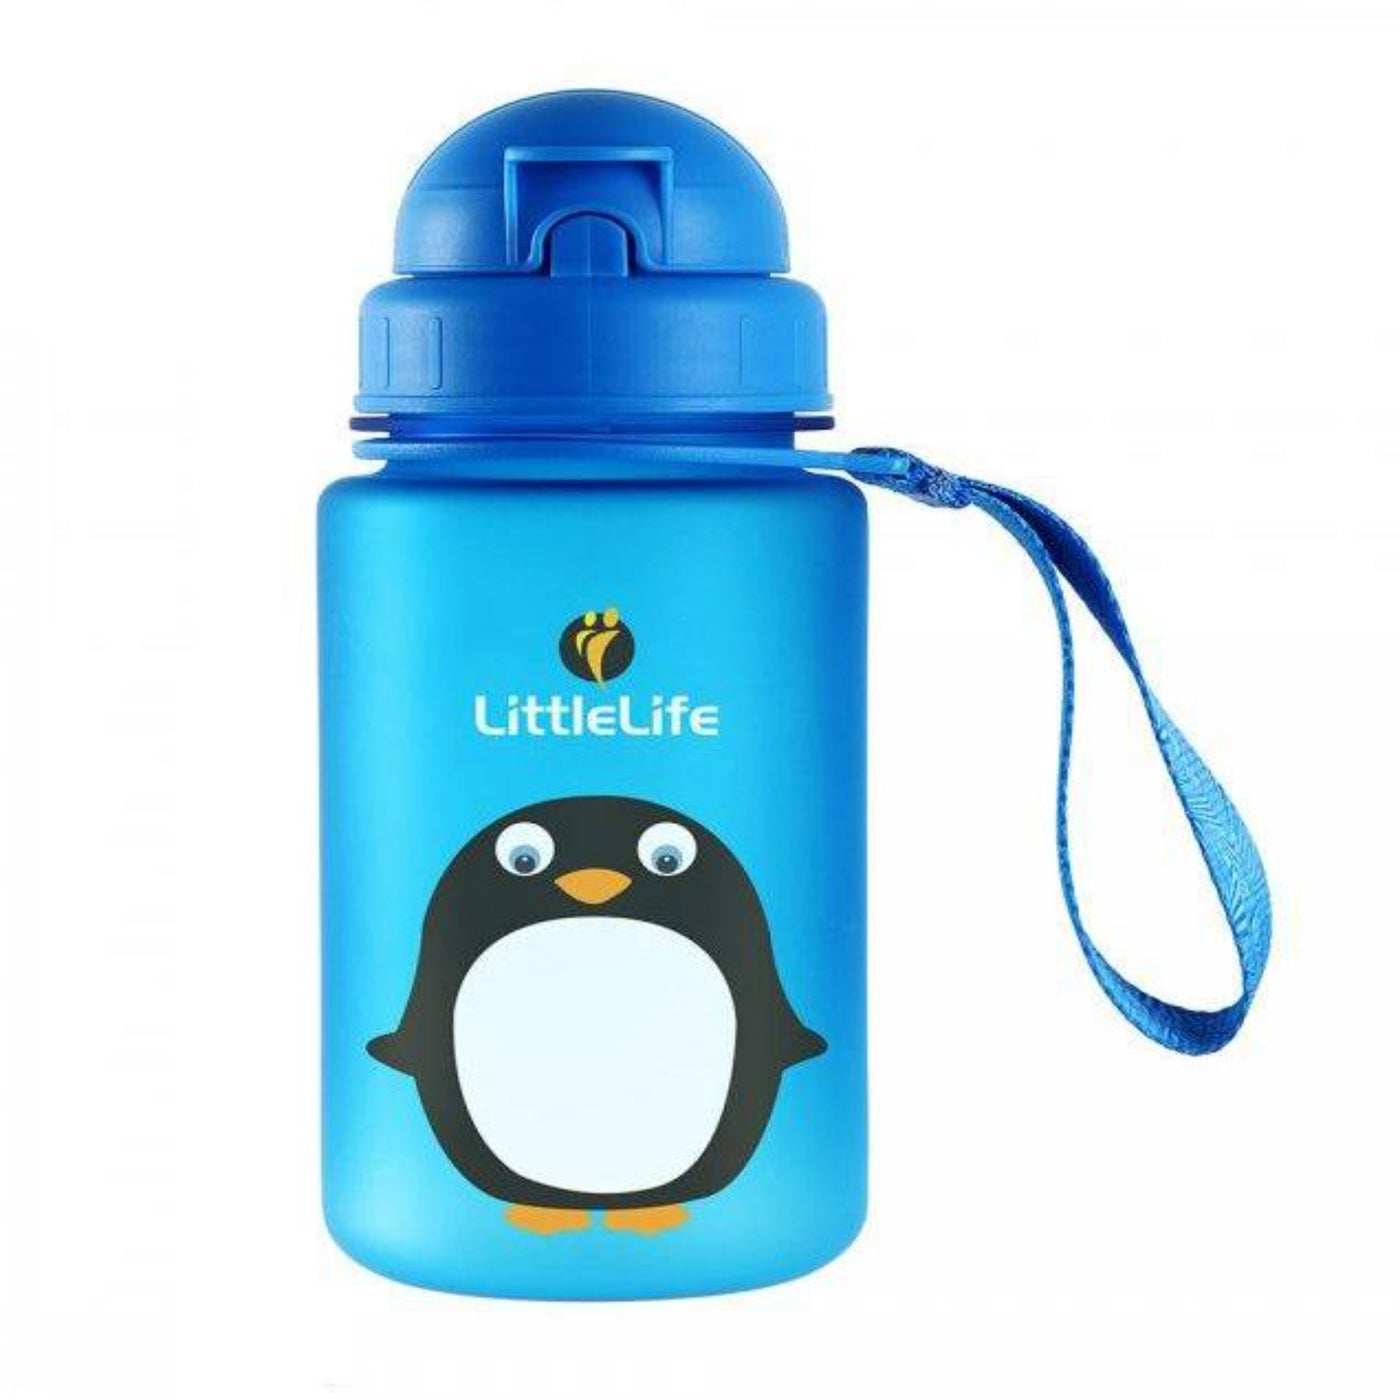 Littlelife Animal Water Bottle | Kids Outdoors Bottles | NZ #Penguin